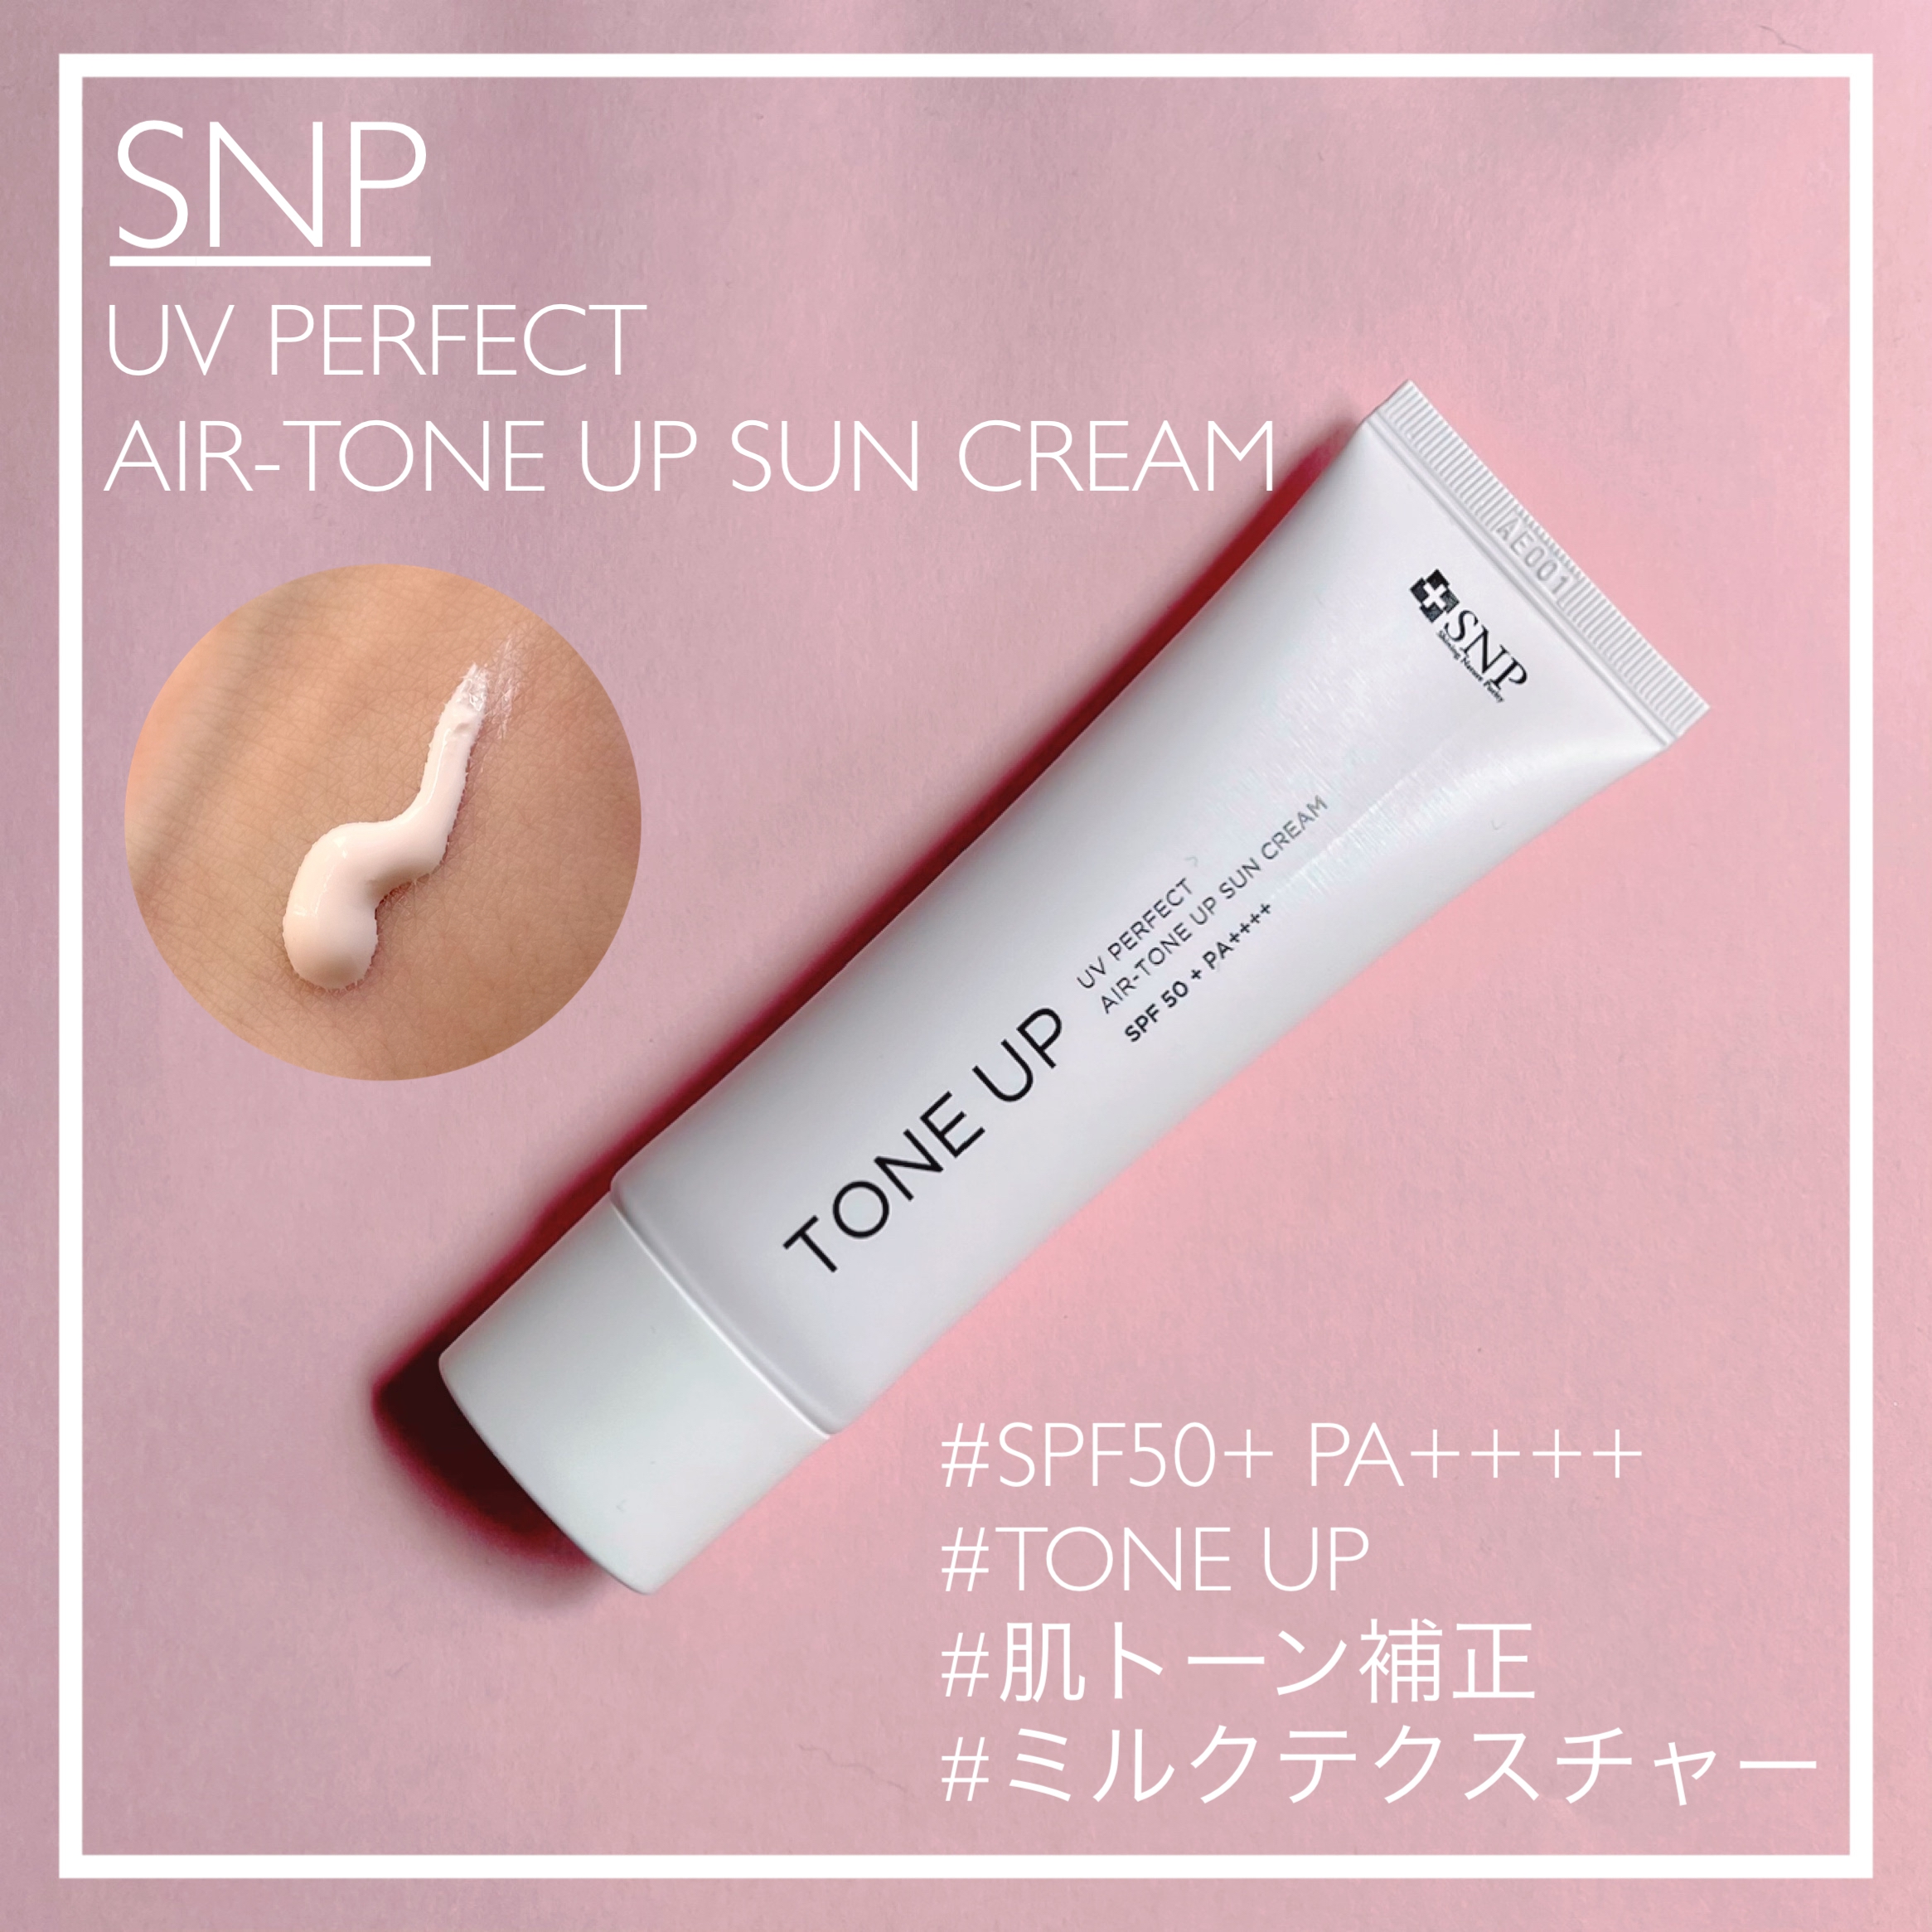 SNP(エスエヌピー) UVパーフェクト エアトーンアップ サンクリームの良い点・メリットに関するsachikoさんの口コミ画像1